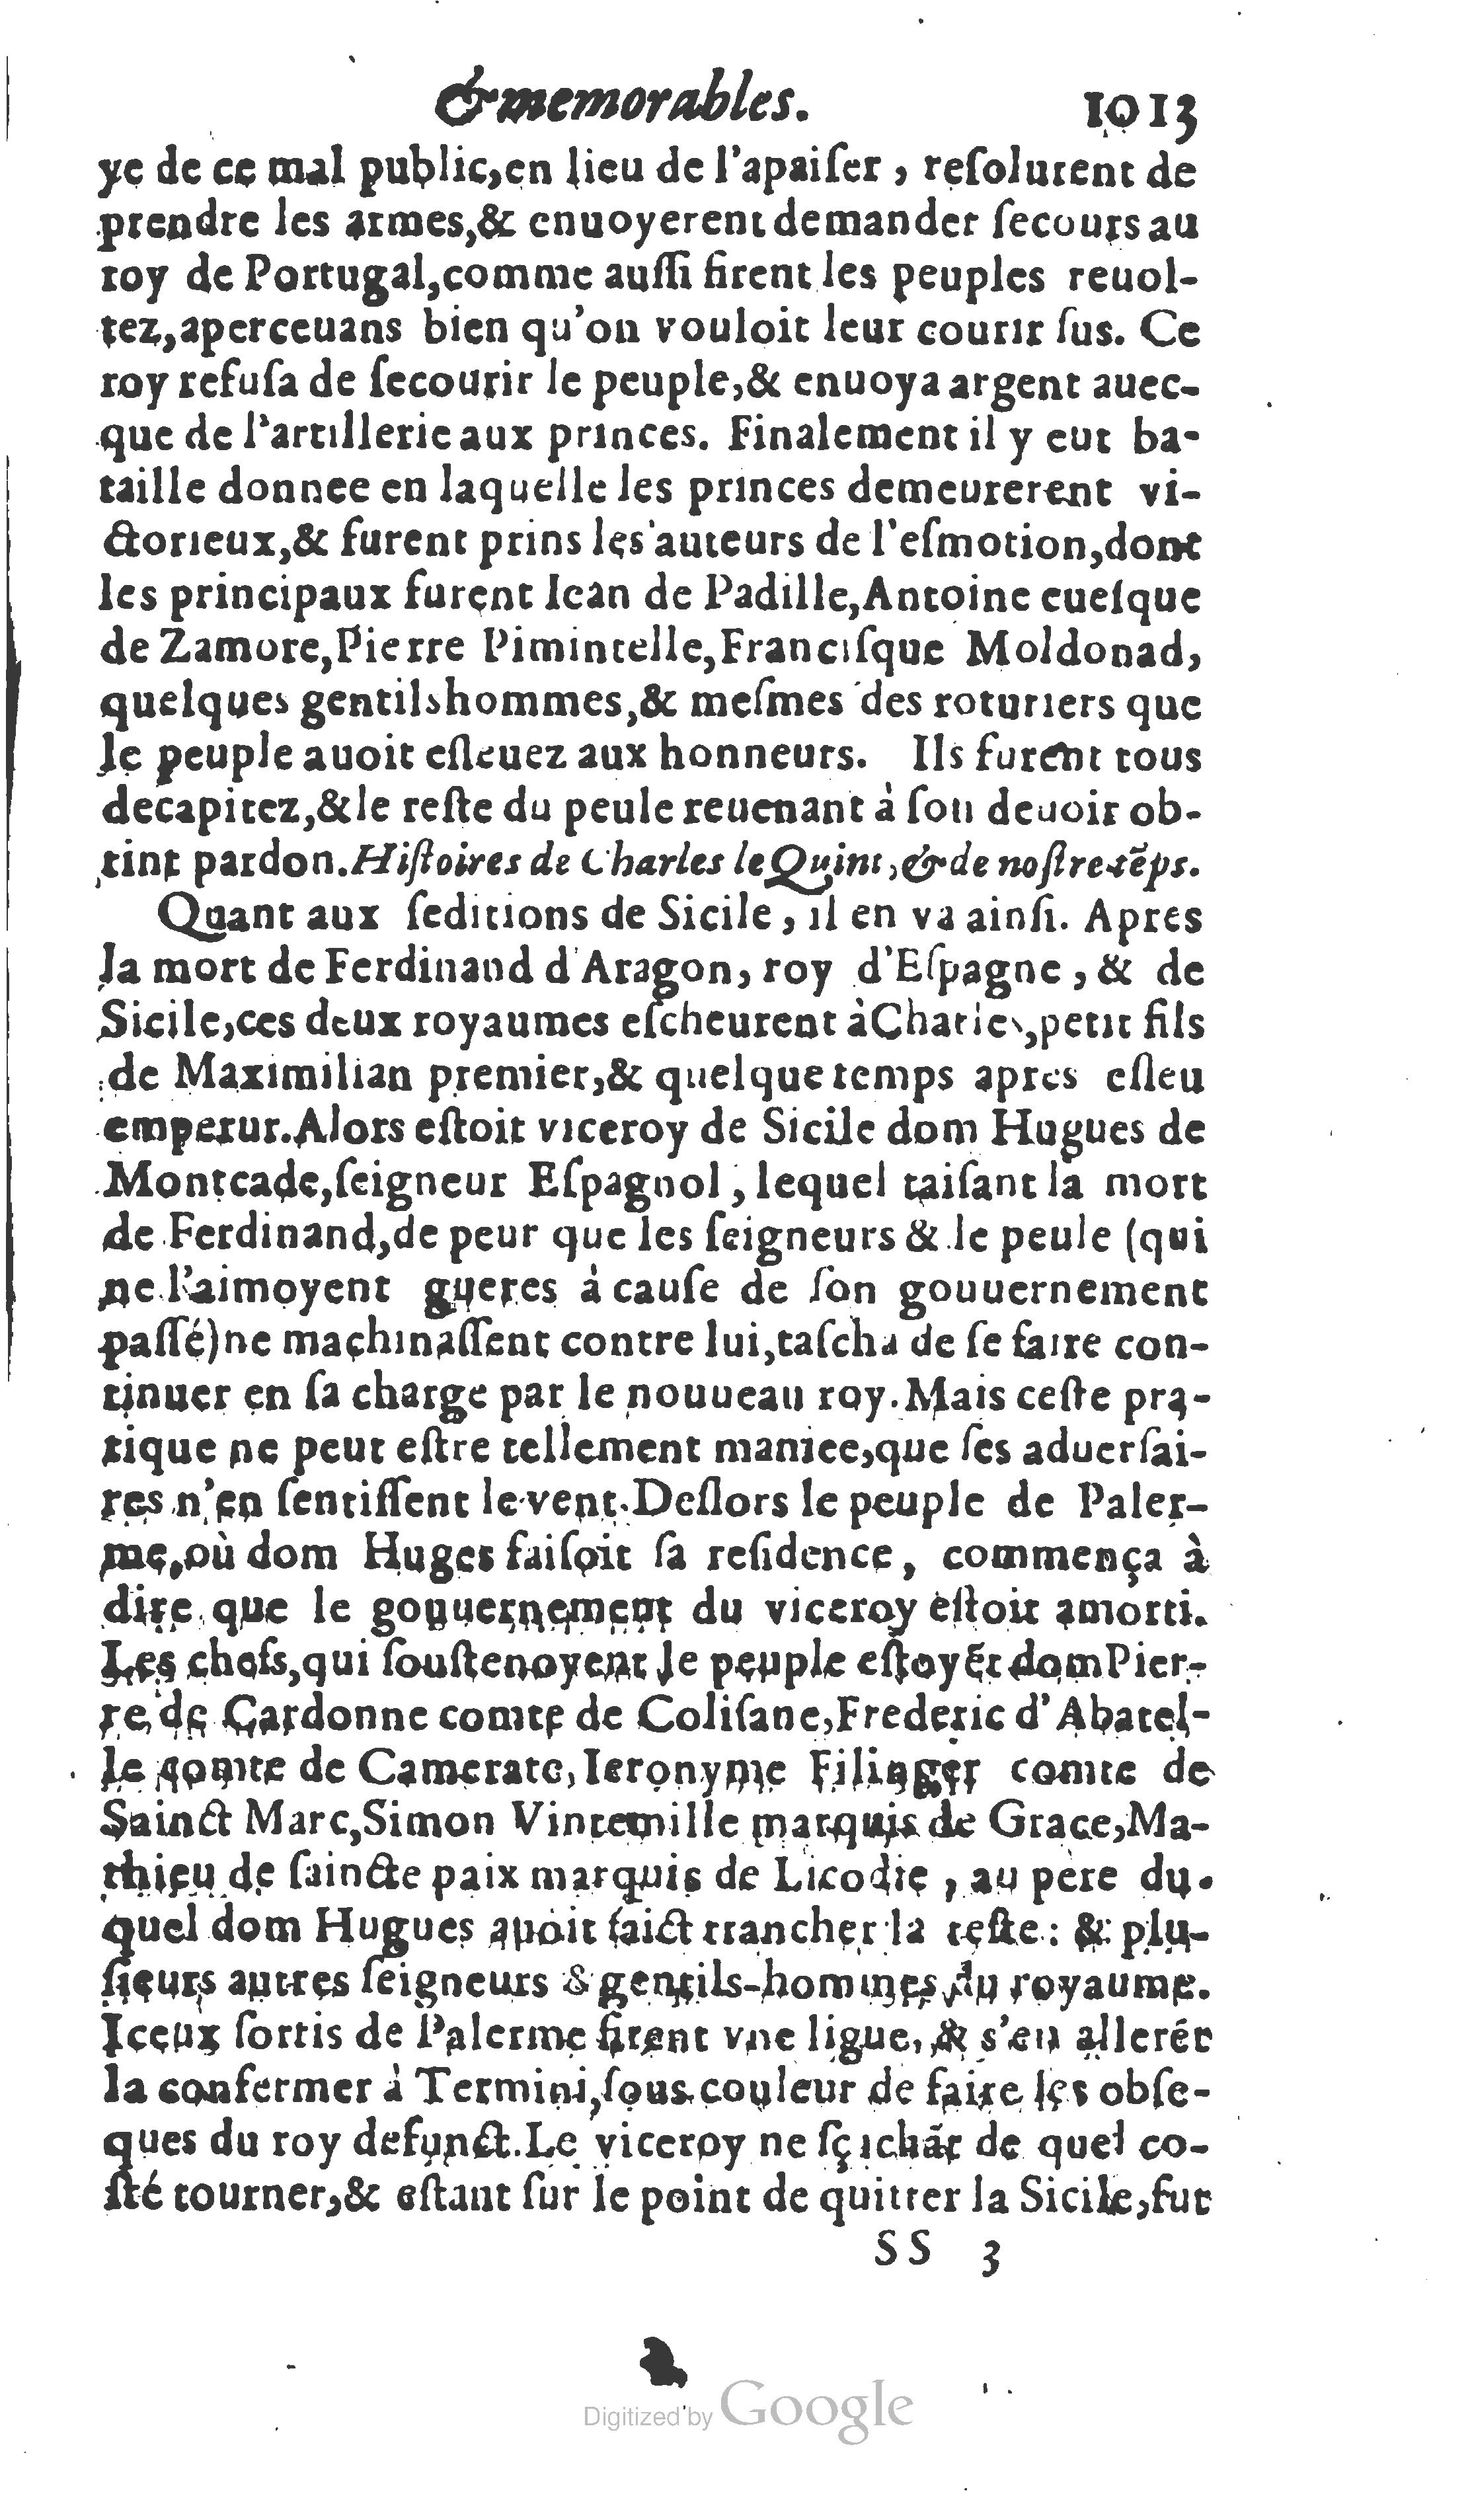 1610 Trésor d’histoires admirables et mémorables de nostre temps Marceau Princeton_Page_1034.jpg